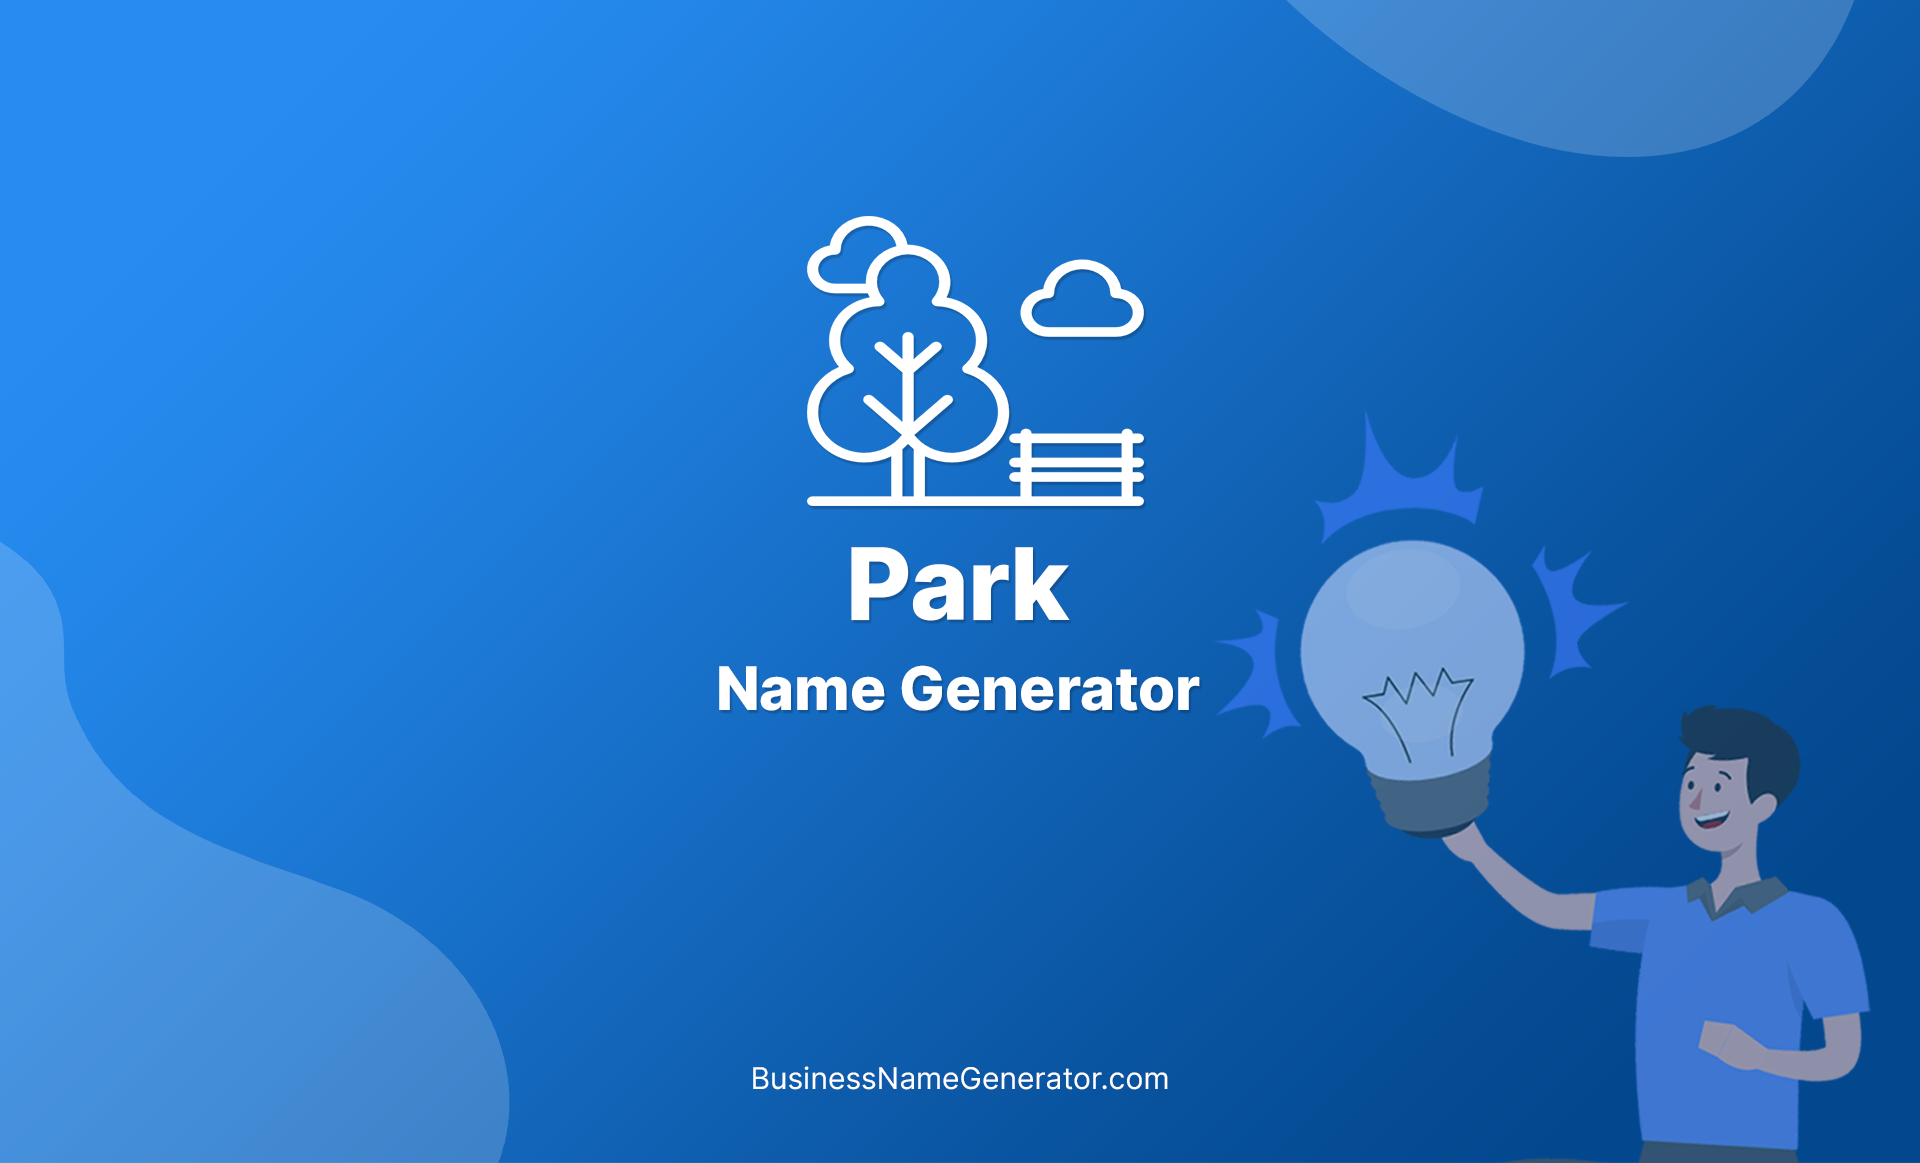 Park Name Generator